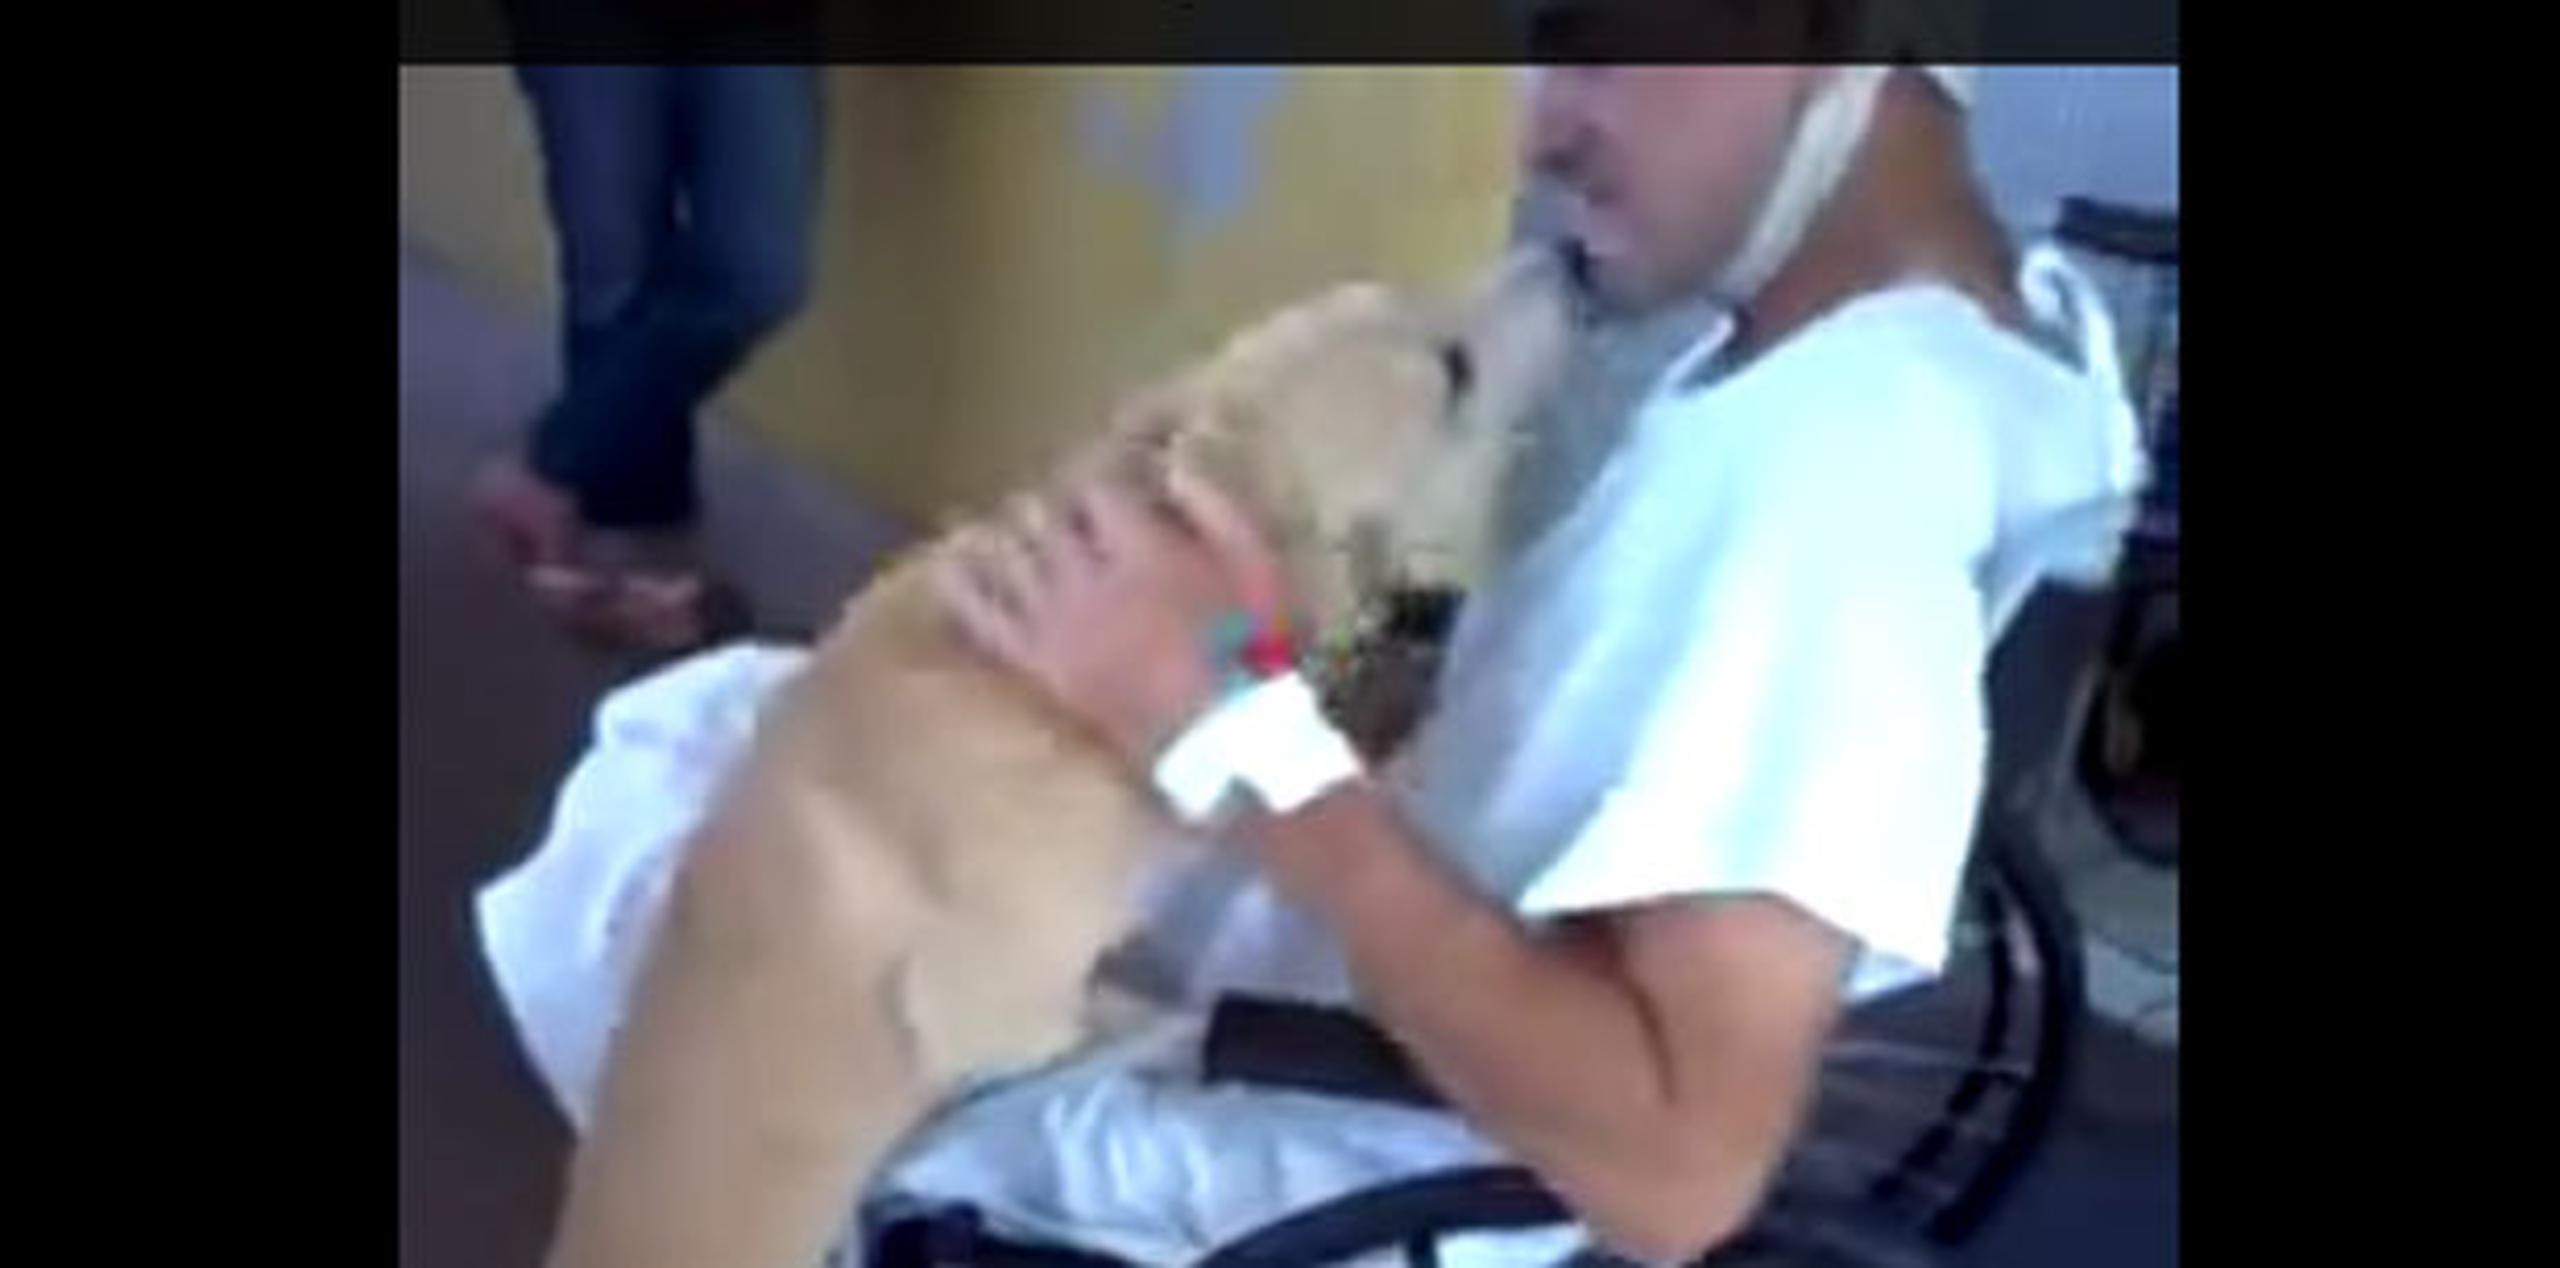 Seco, el perro del paciente, esperó en el estacionamiento del hospital, a donde personal del lugar le llevó comida y agua. (YouTube)